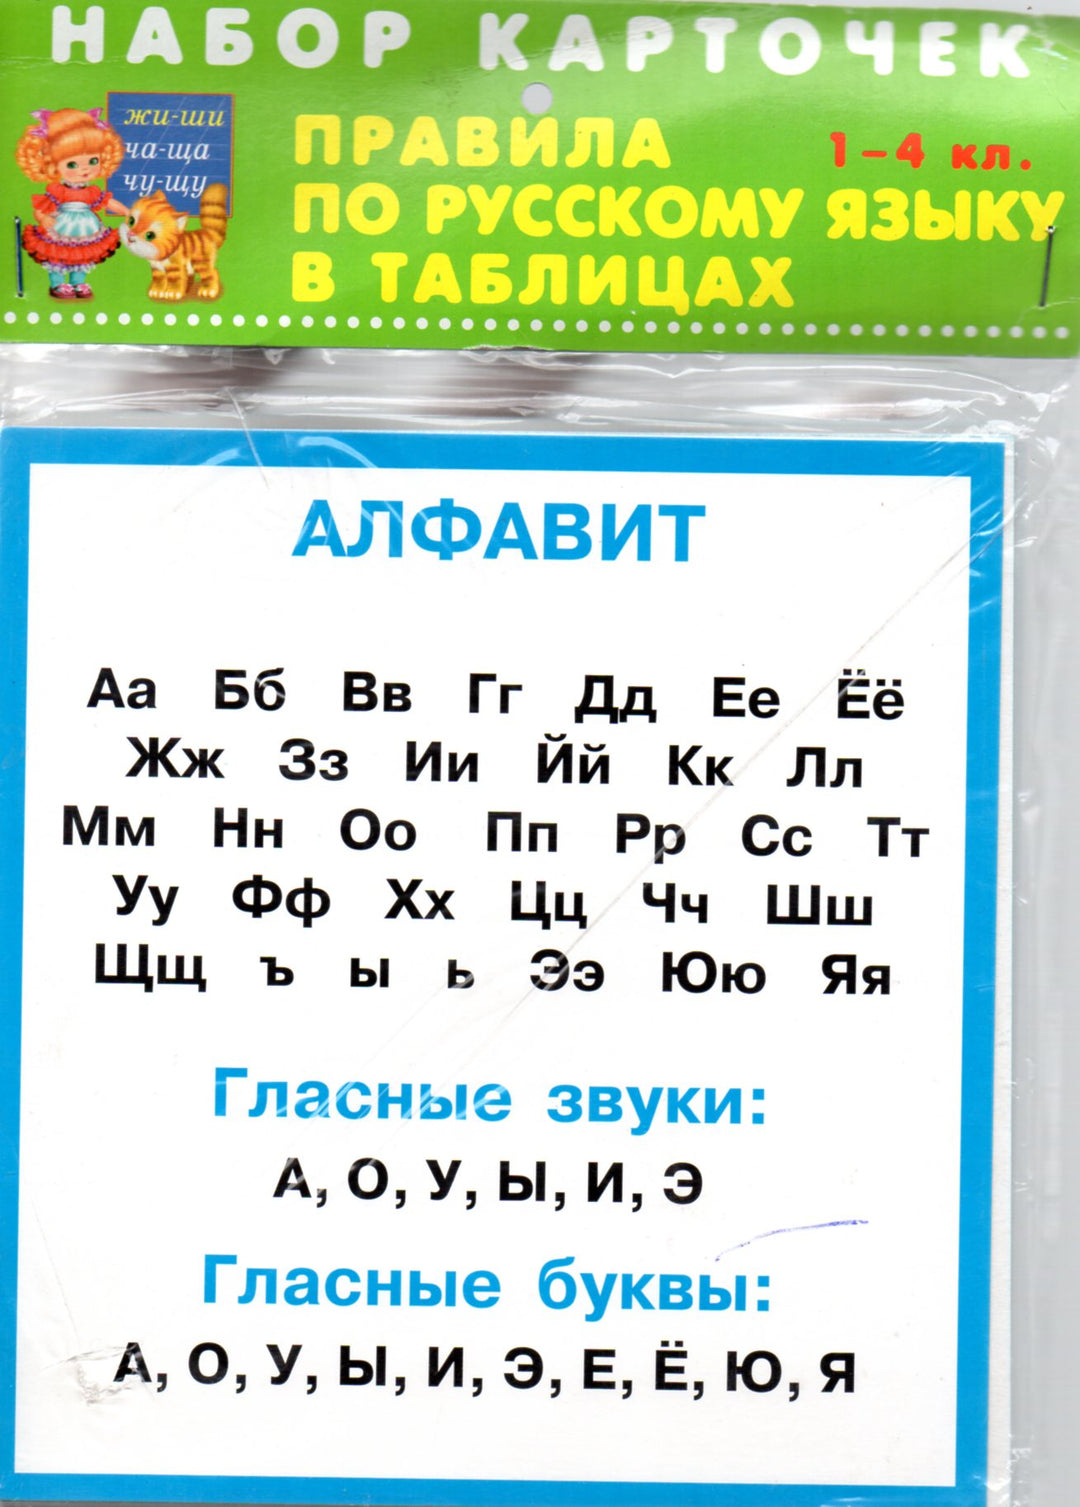 Правила по русскому языку в таблицах. 1-4 классы. Комплект карточек-Искатель-Искатель-Lookomorie